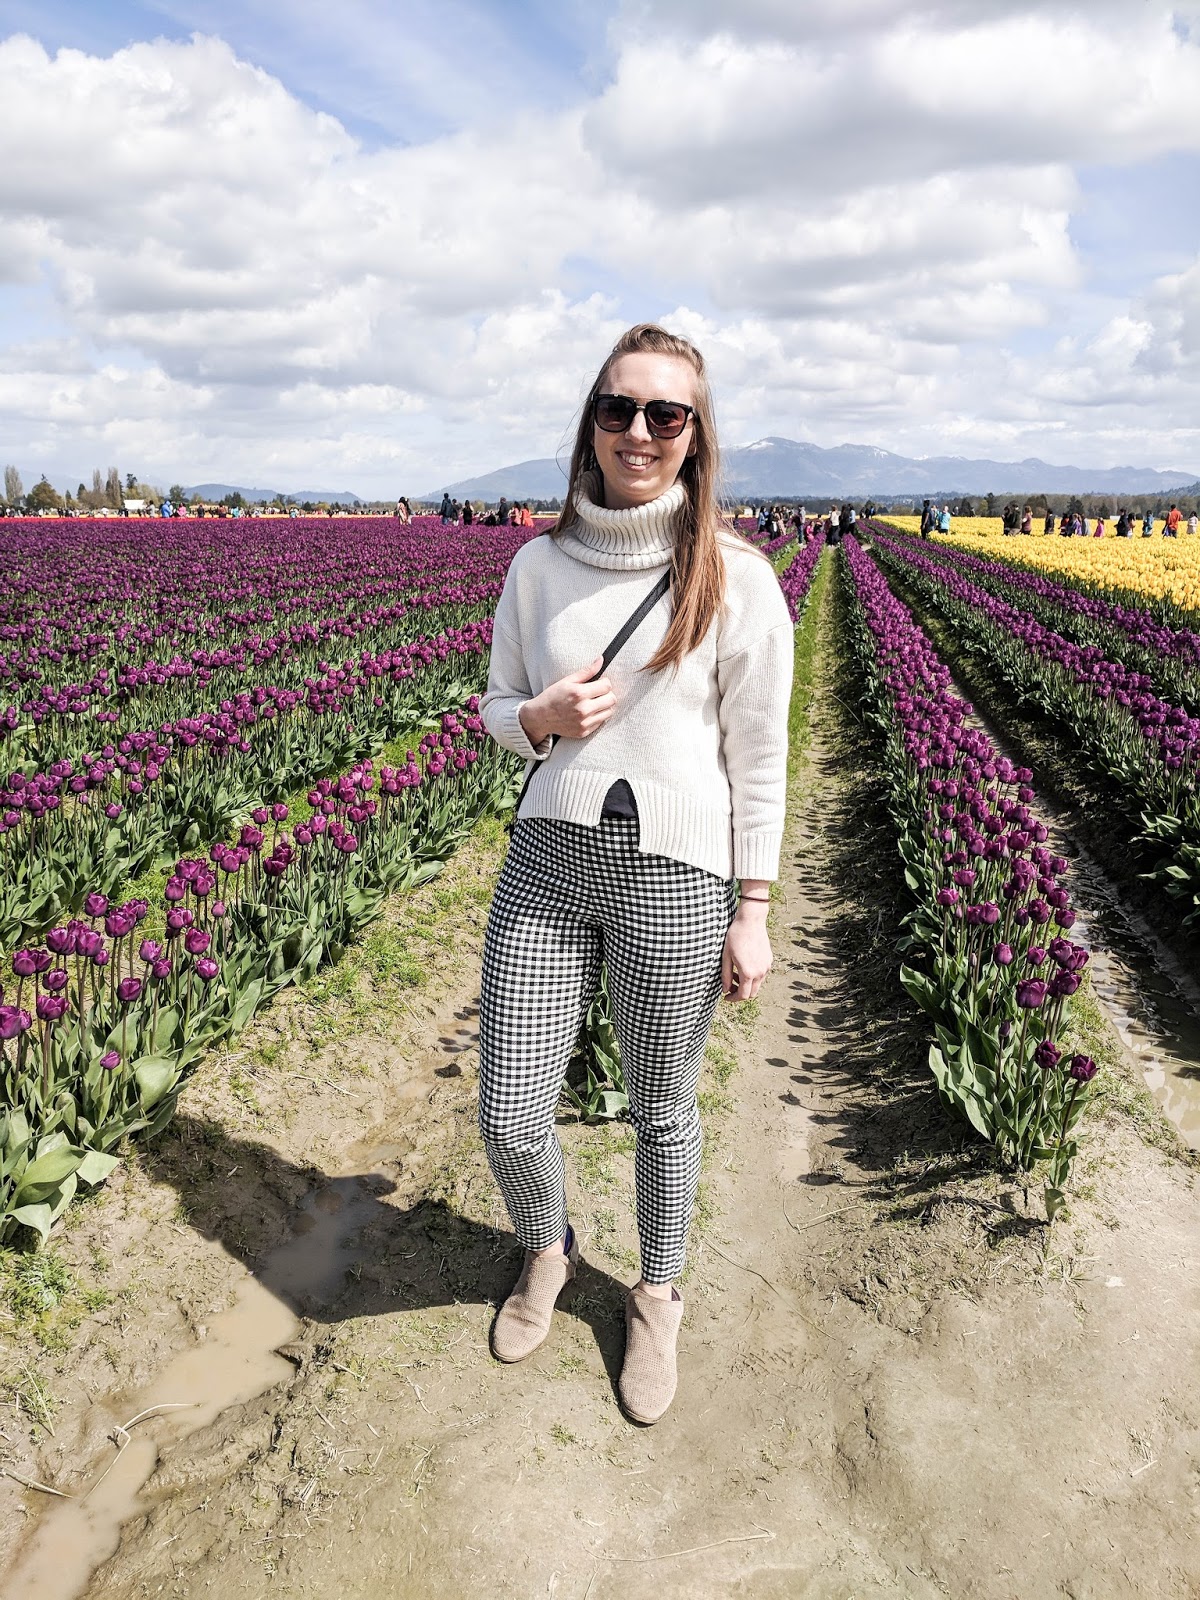 Visiting The Skagit Valley Tulip Festival | Kayla Lynn